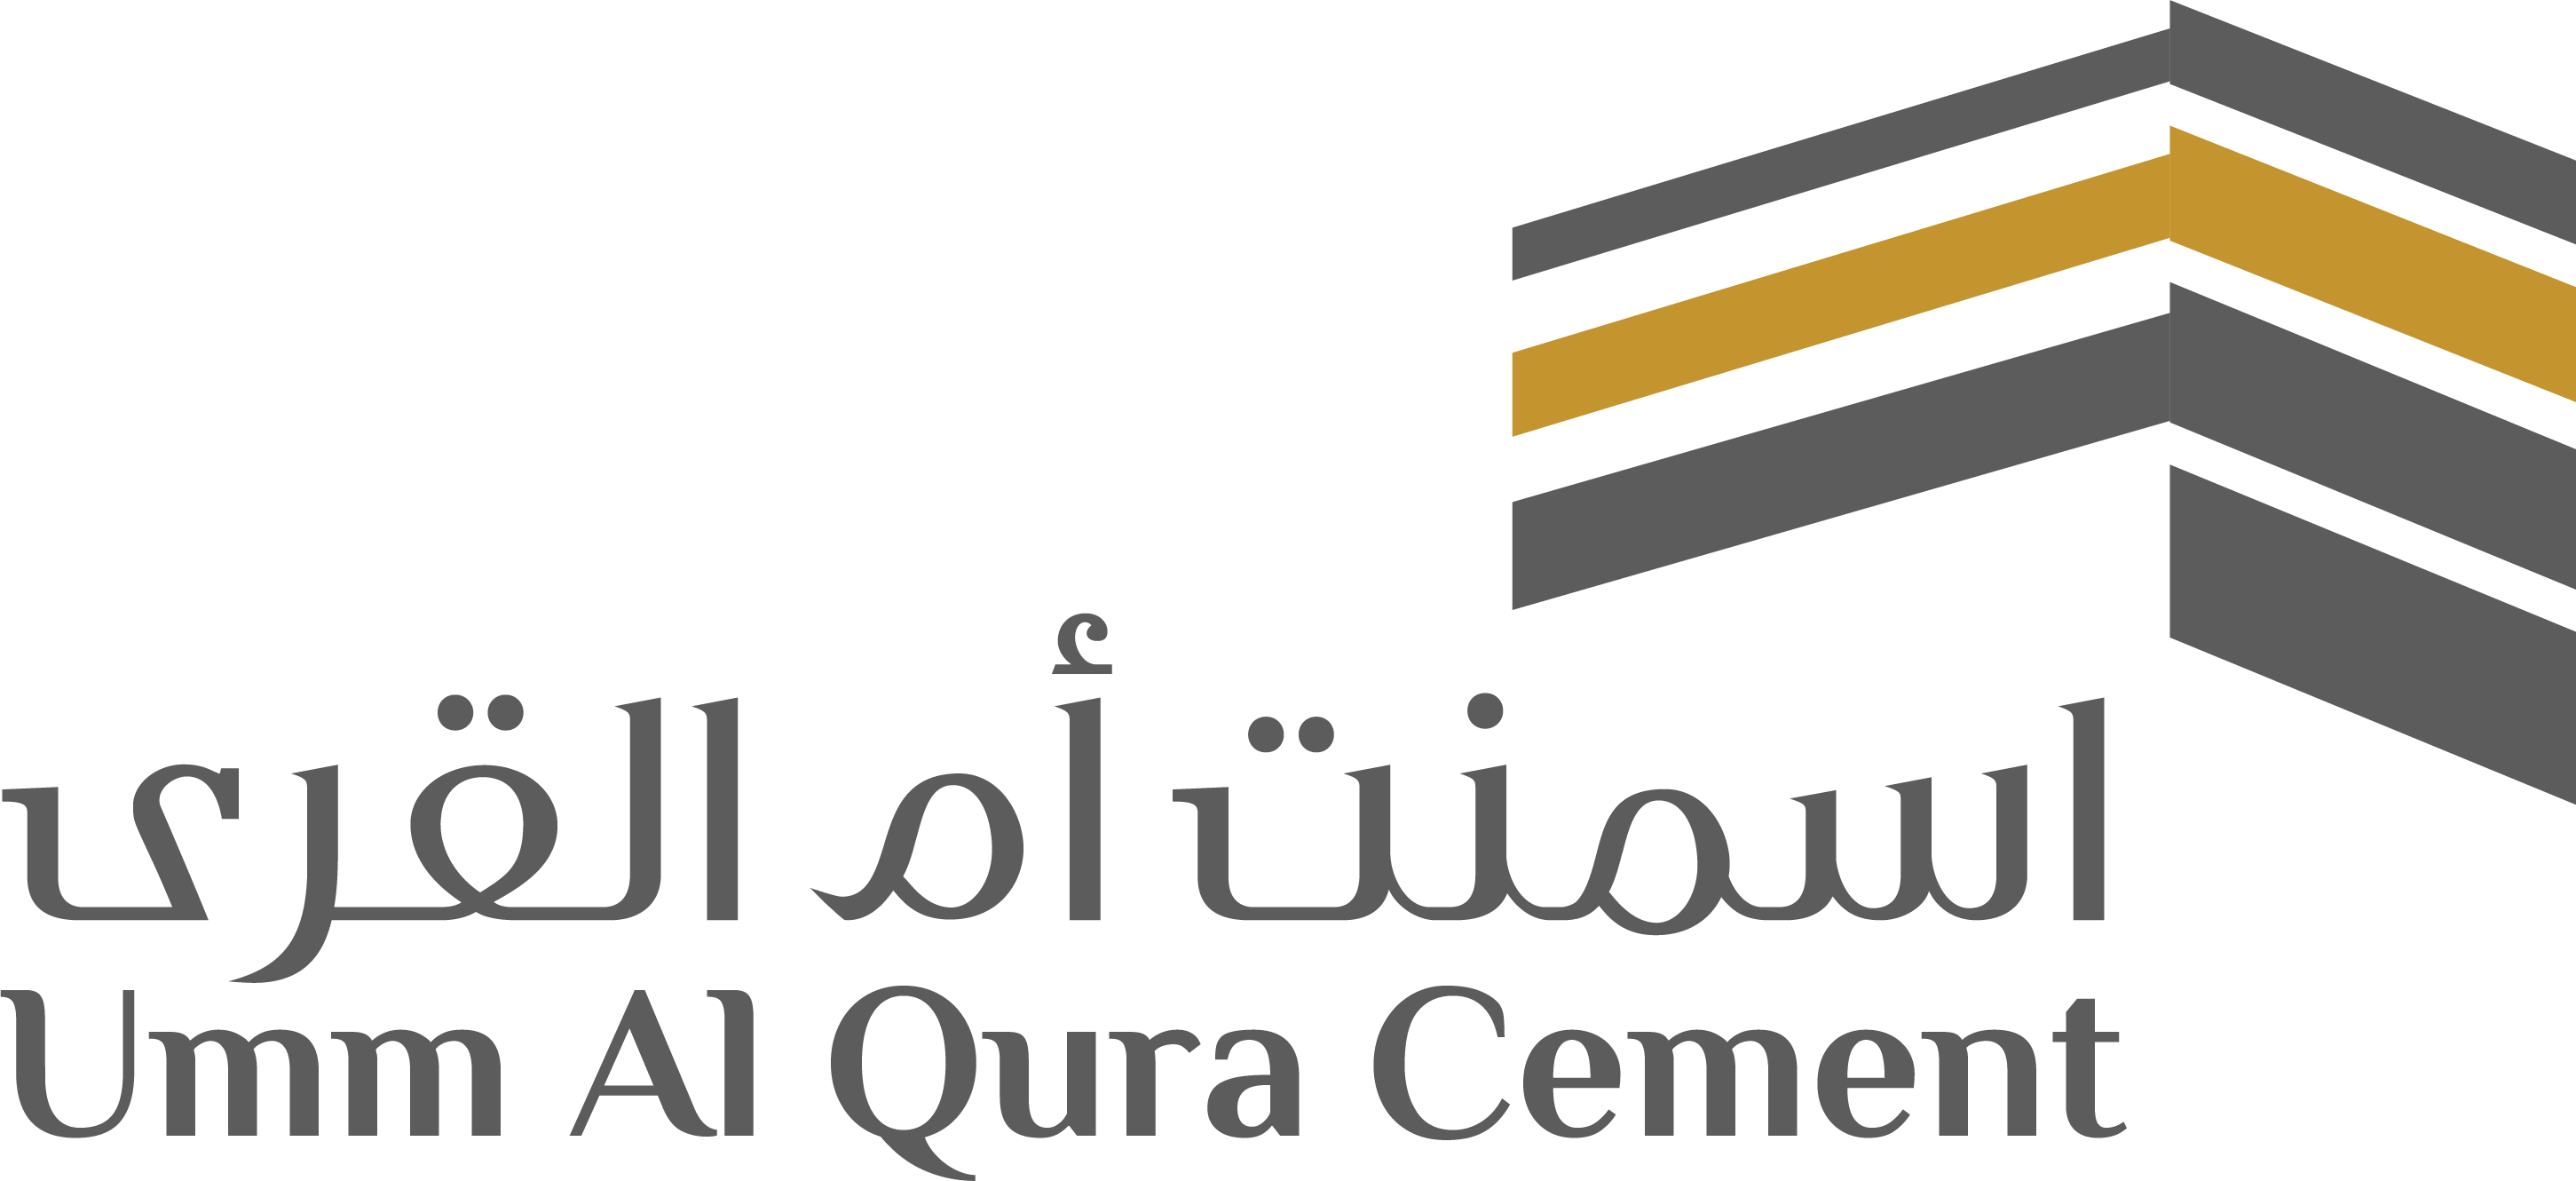 Umm Al-Qura Cement Company logo large (transparent PNG)